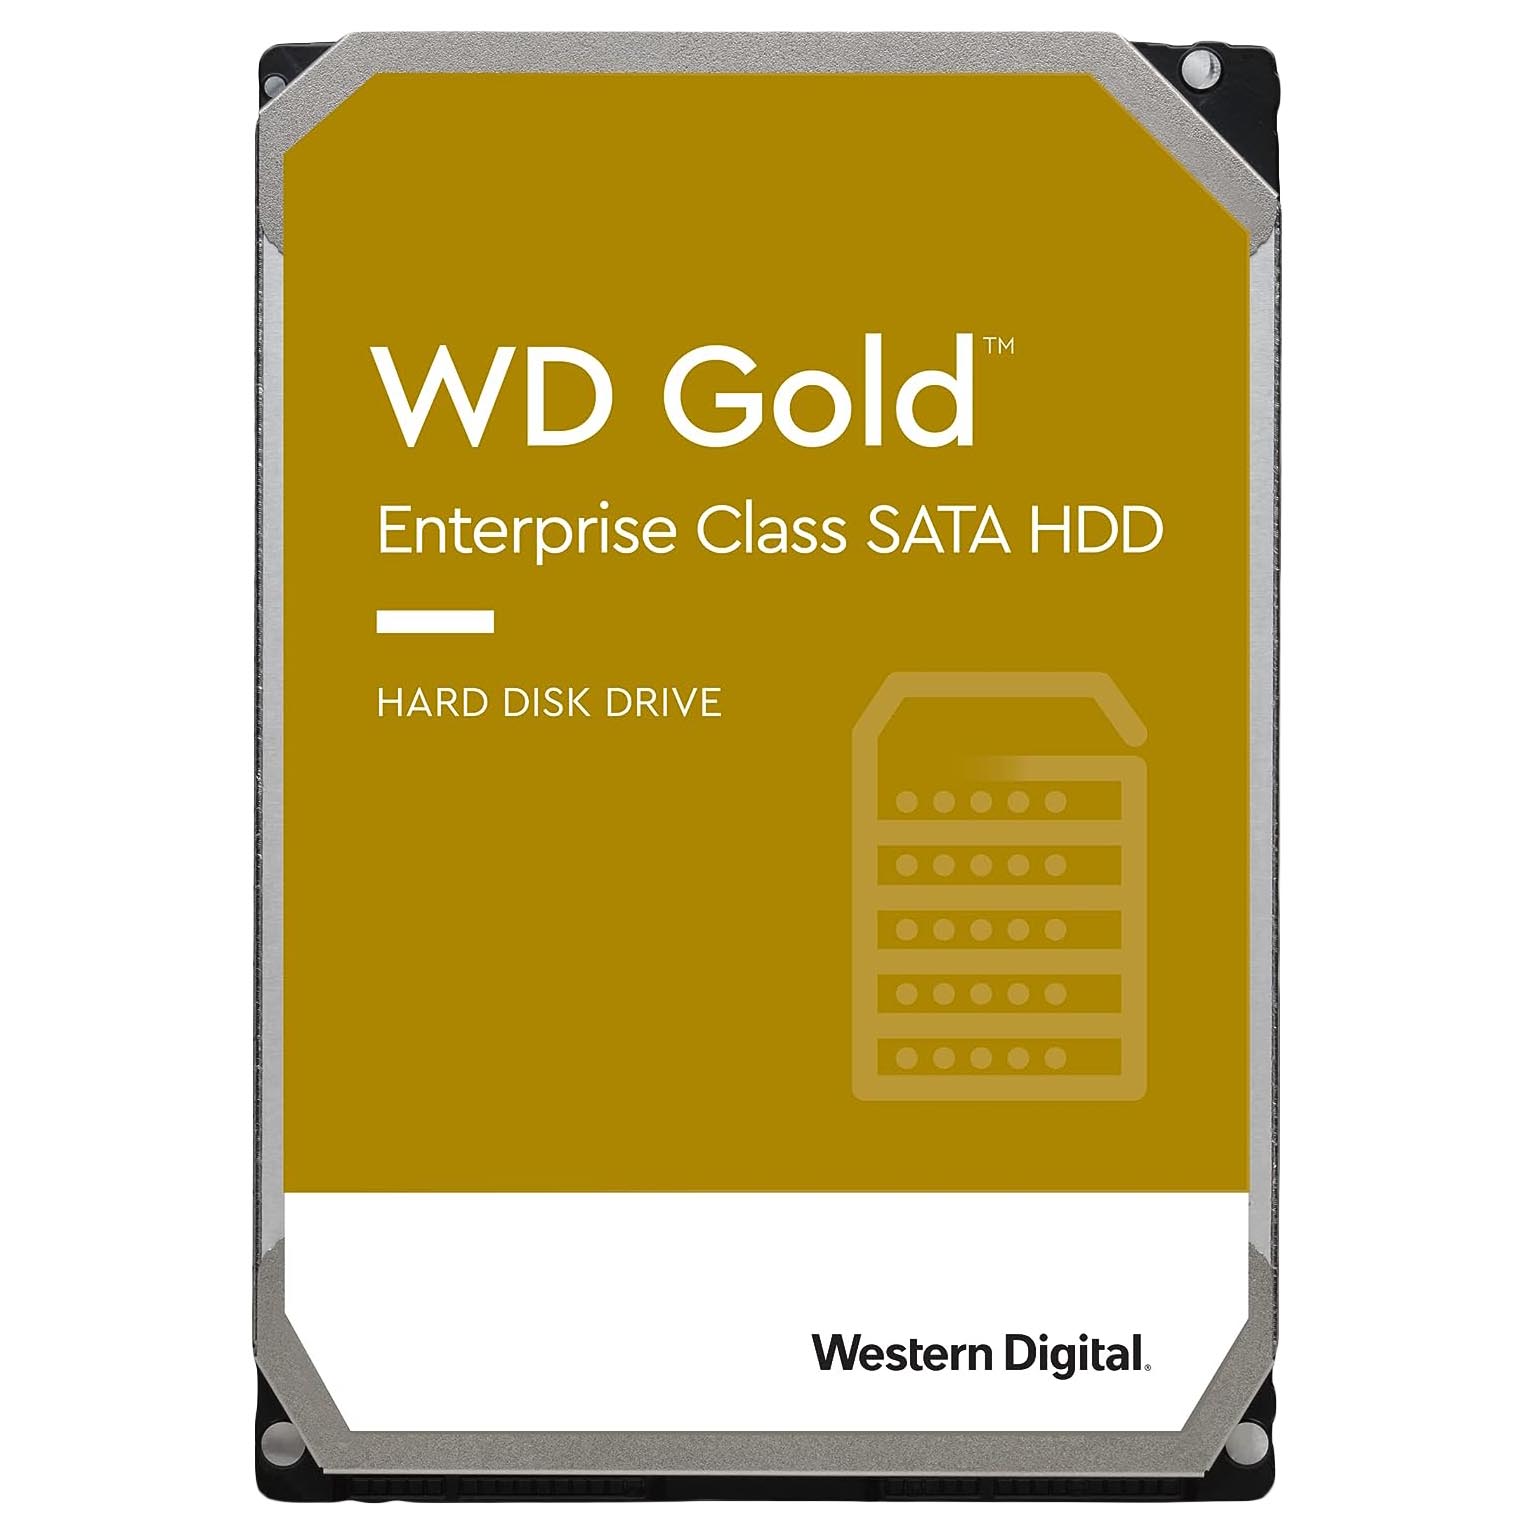 Внутренний жесткий диск Western Digital WD Gold Enterprise Class, WD181VRYZ, 18Тб внутренний жесткий диск western digital gold 3 5 8 тб wd8004fryz